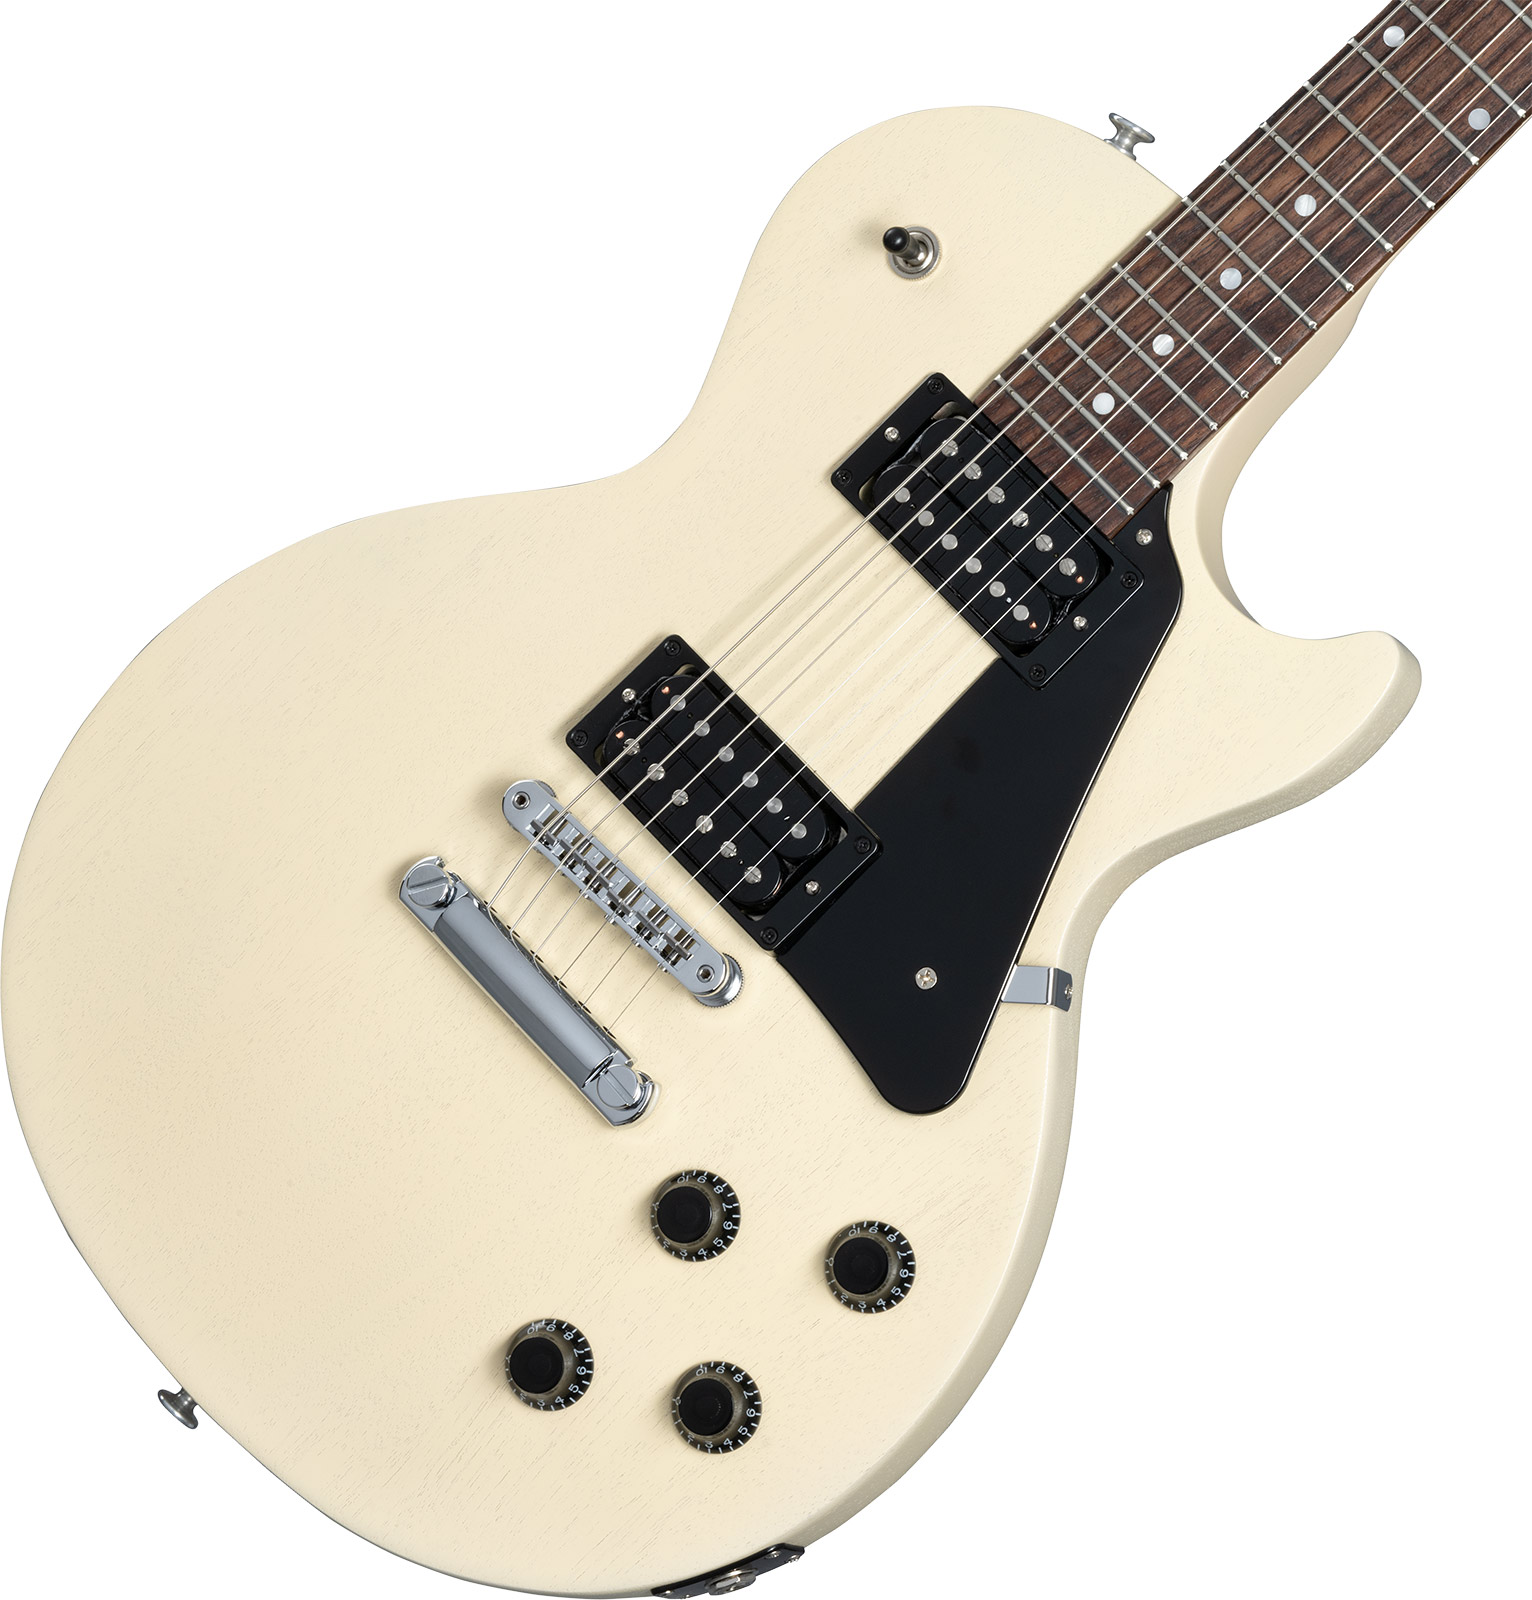 Gibson Les Paul Modern Lite 2h Ht Rw - Tv Wheat - Single cut electric guitar - Variation 3